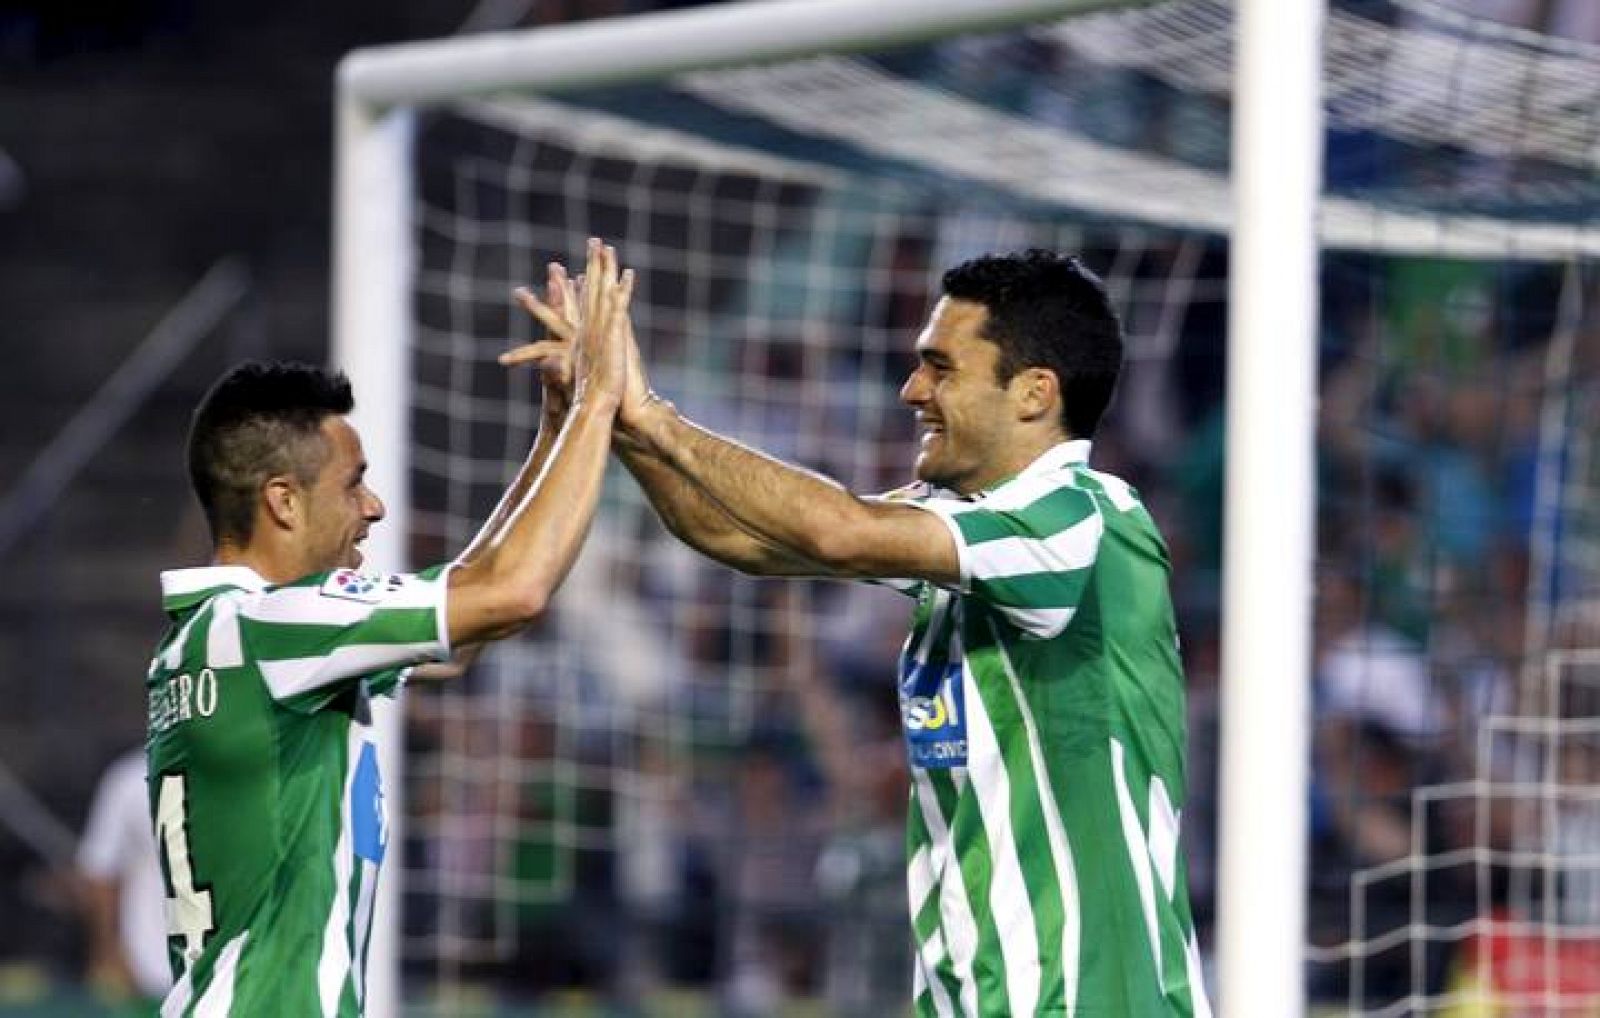 Los jugadores del Betis, Castro y Molina, celebran el segundo gol del equipo bético, durante el encuentro que les ha enfrentado esta noche al Tenerife en el estadio Benito Villamarin, en Sevilla.